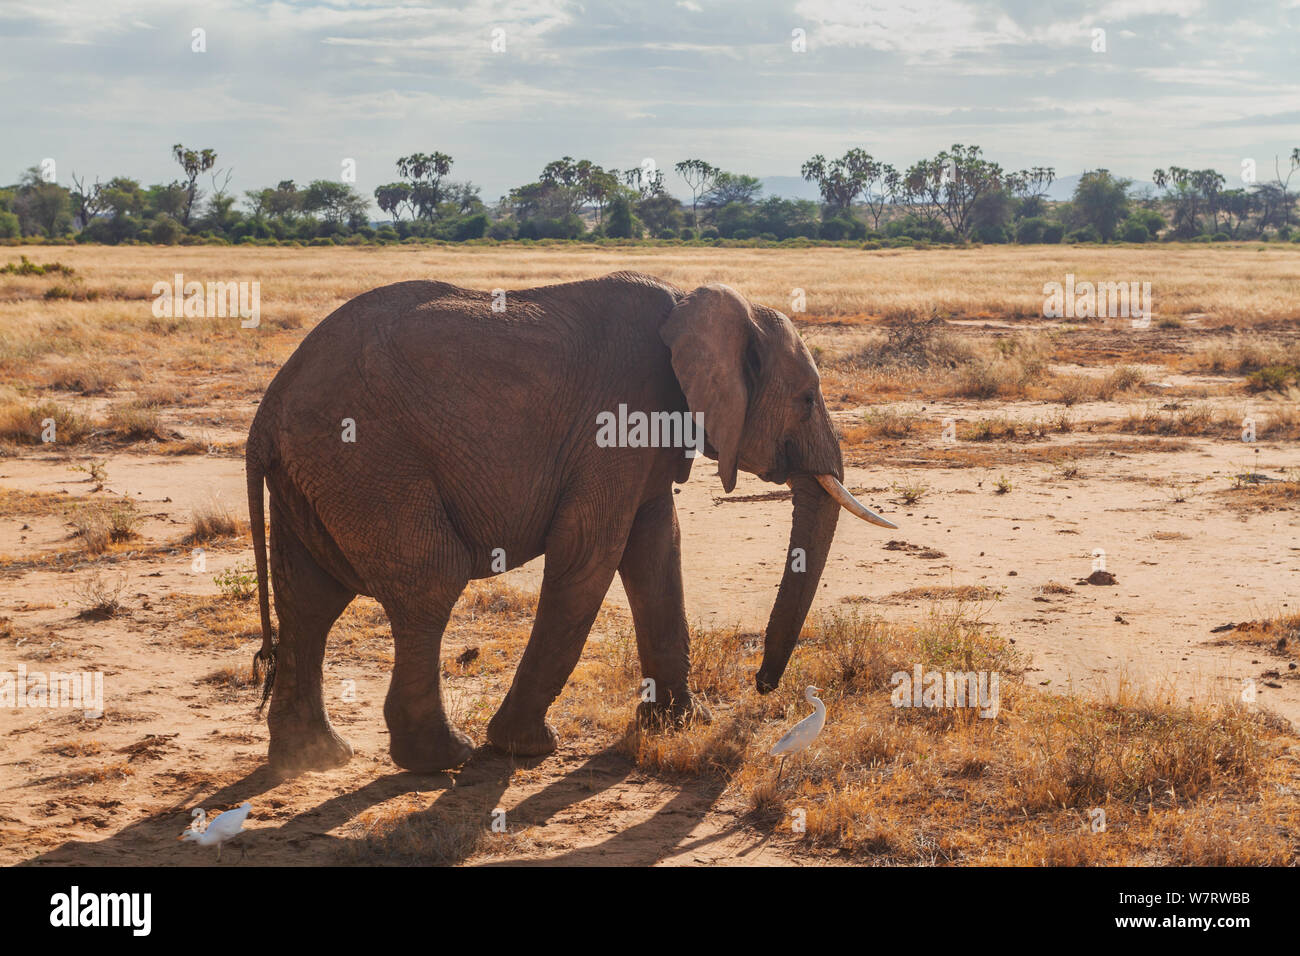 African elephant Loxodonta africana dans la réserve nationale de Samburu télévision rouge allumé côté soleil. Arbres, ciel scrub en distance. Ombre et copy space Banque D'Images